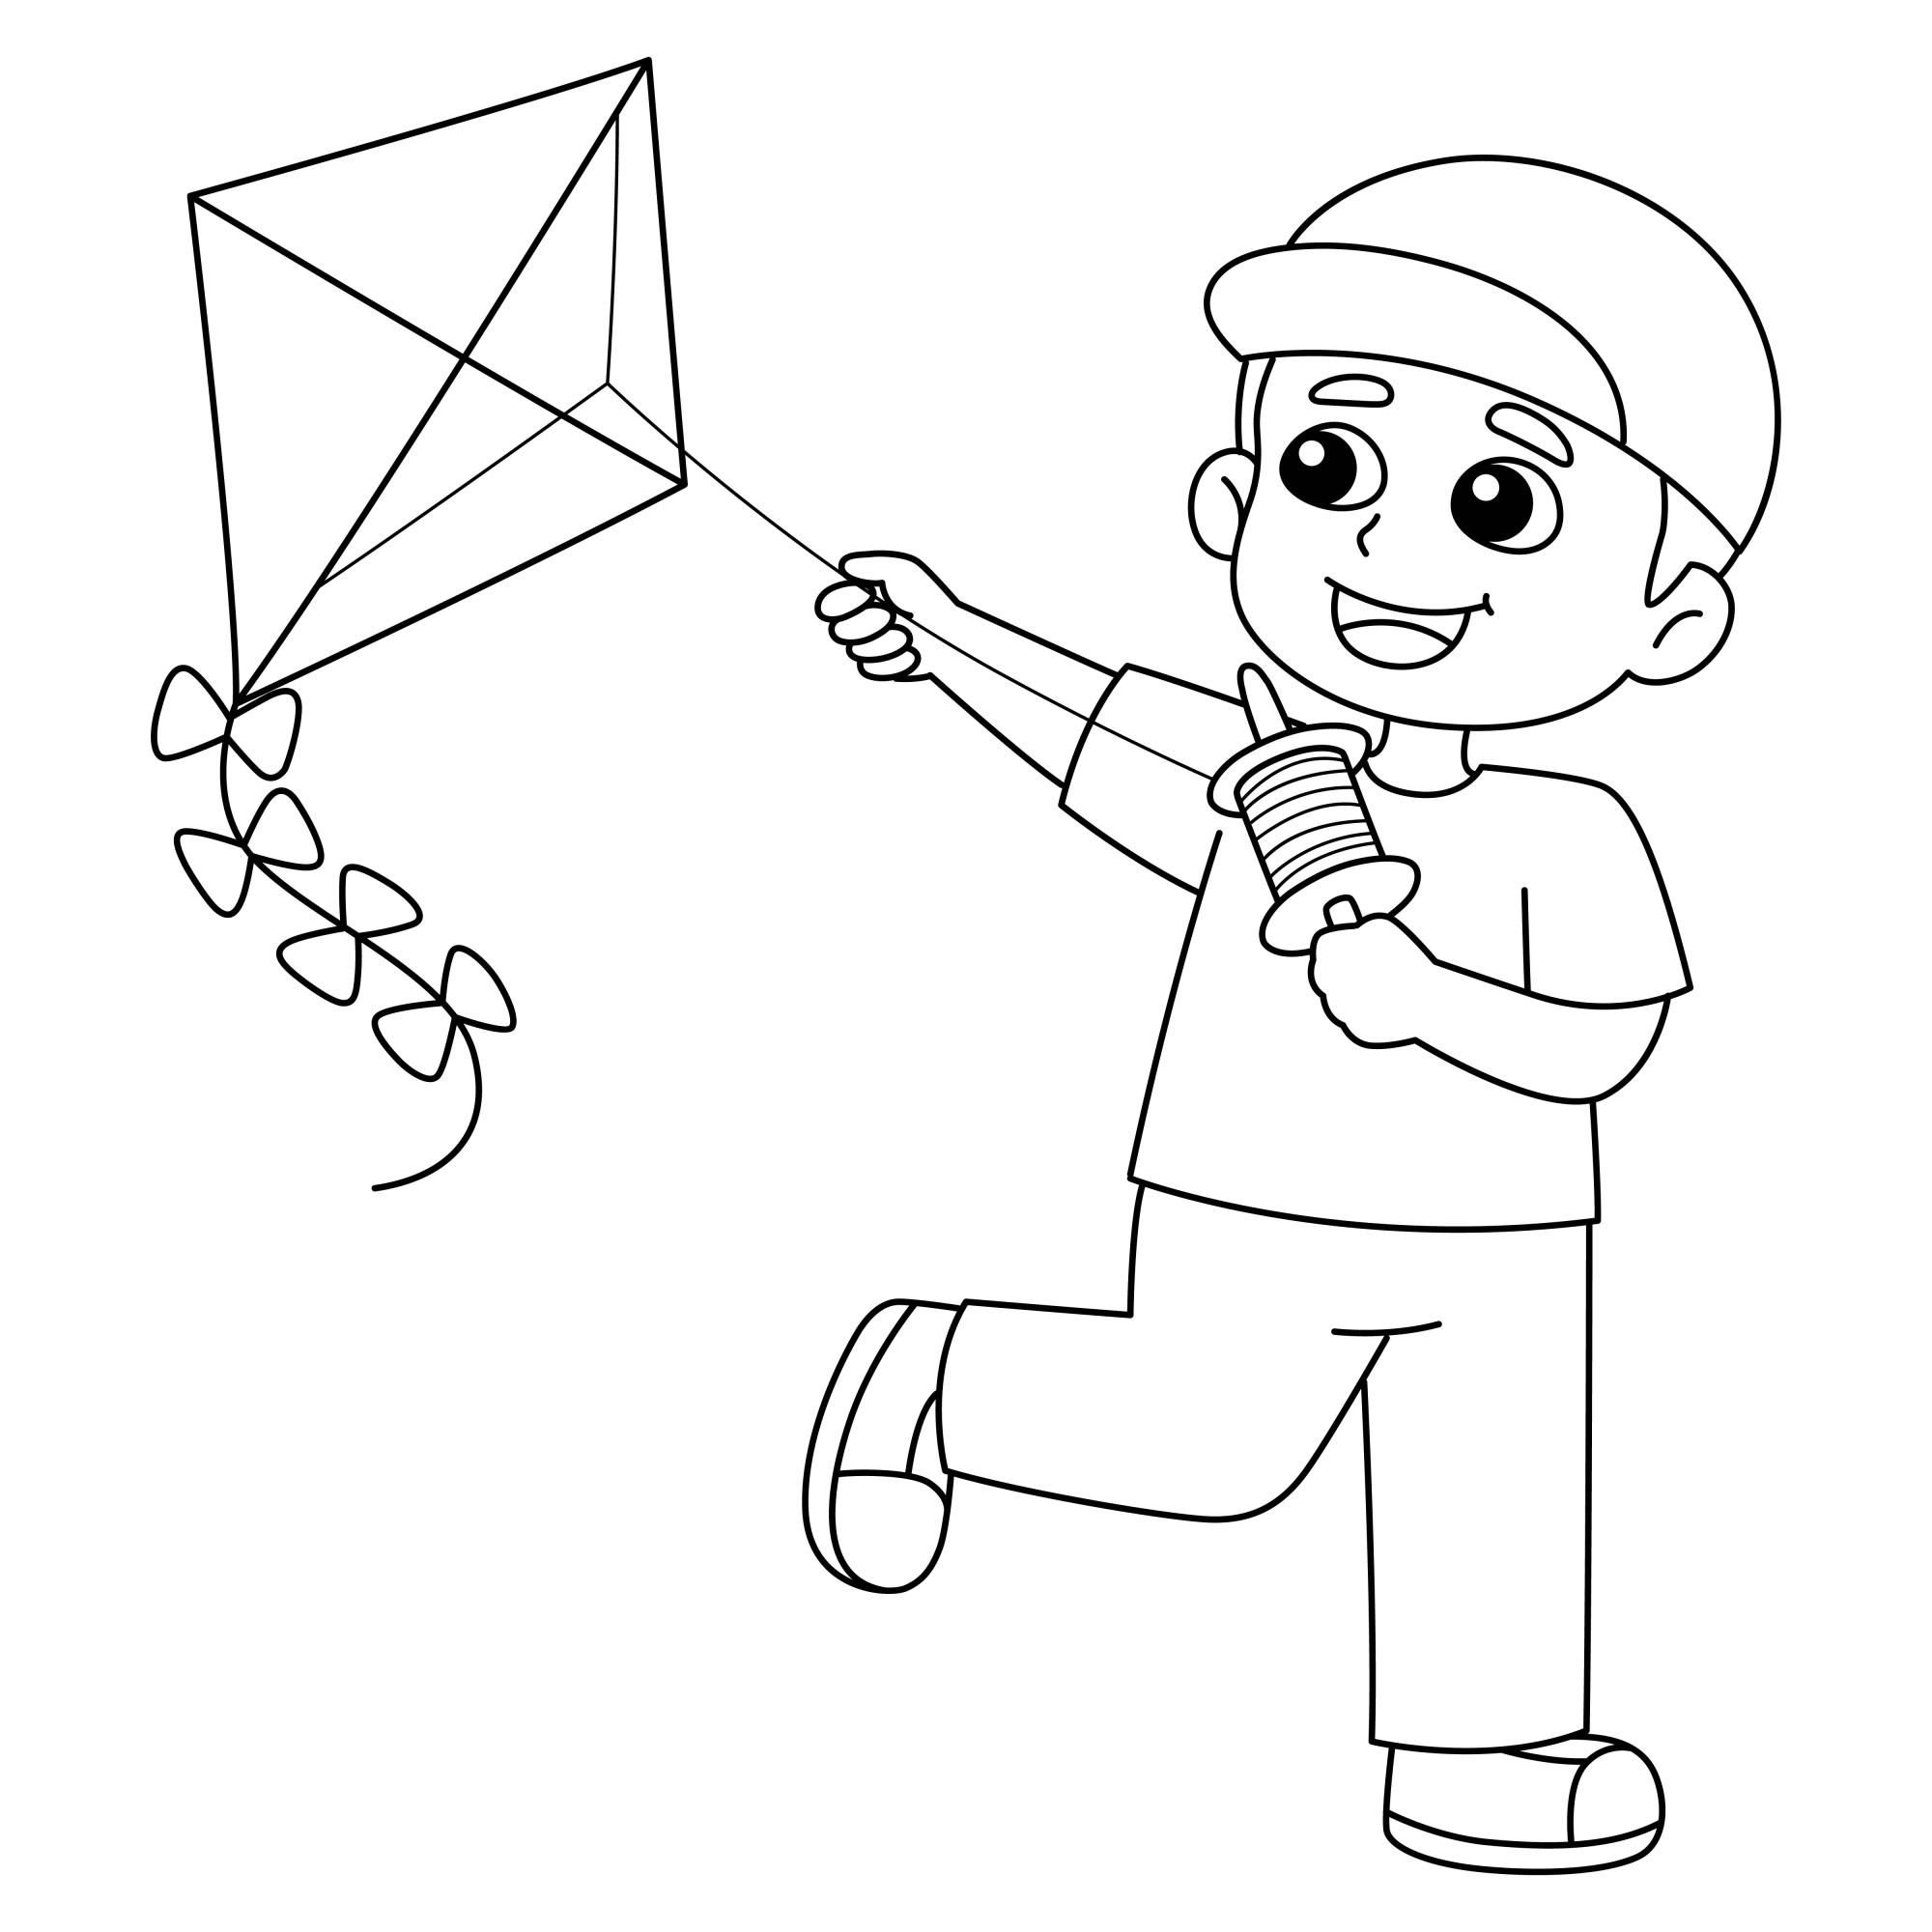 Раскраска для детей: мальчик бегает с игрушкой воздушный змей